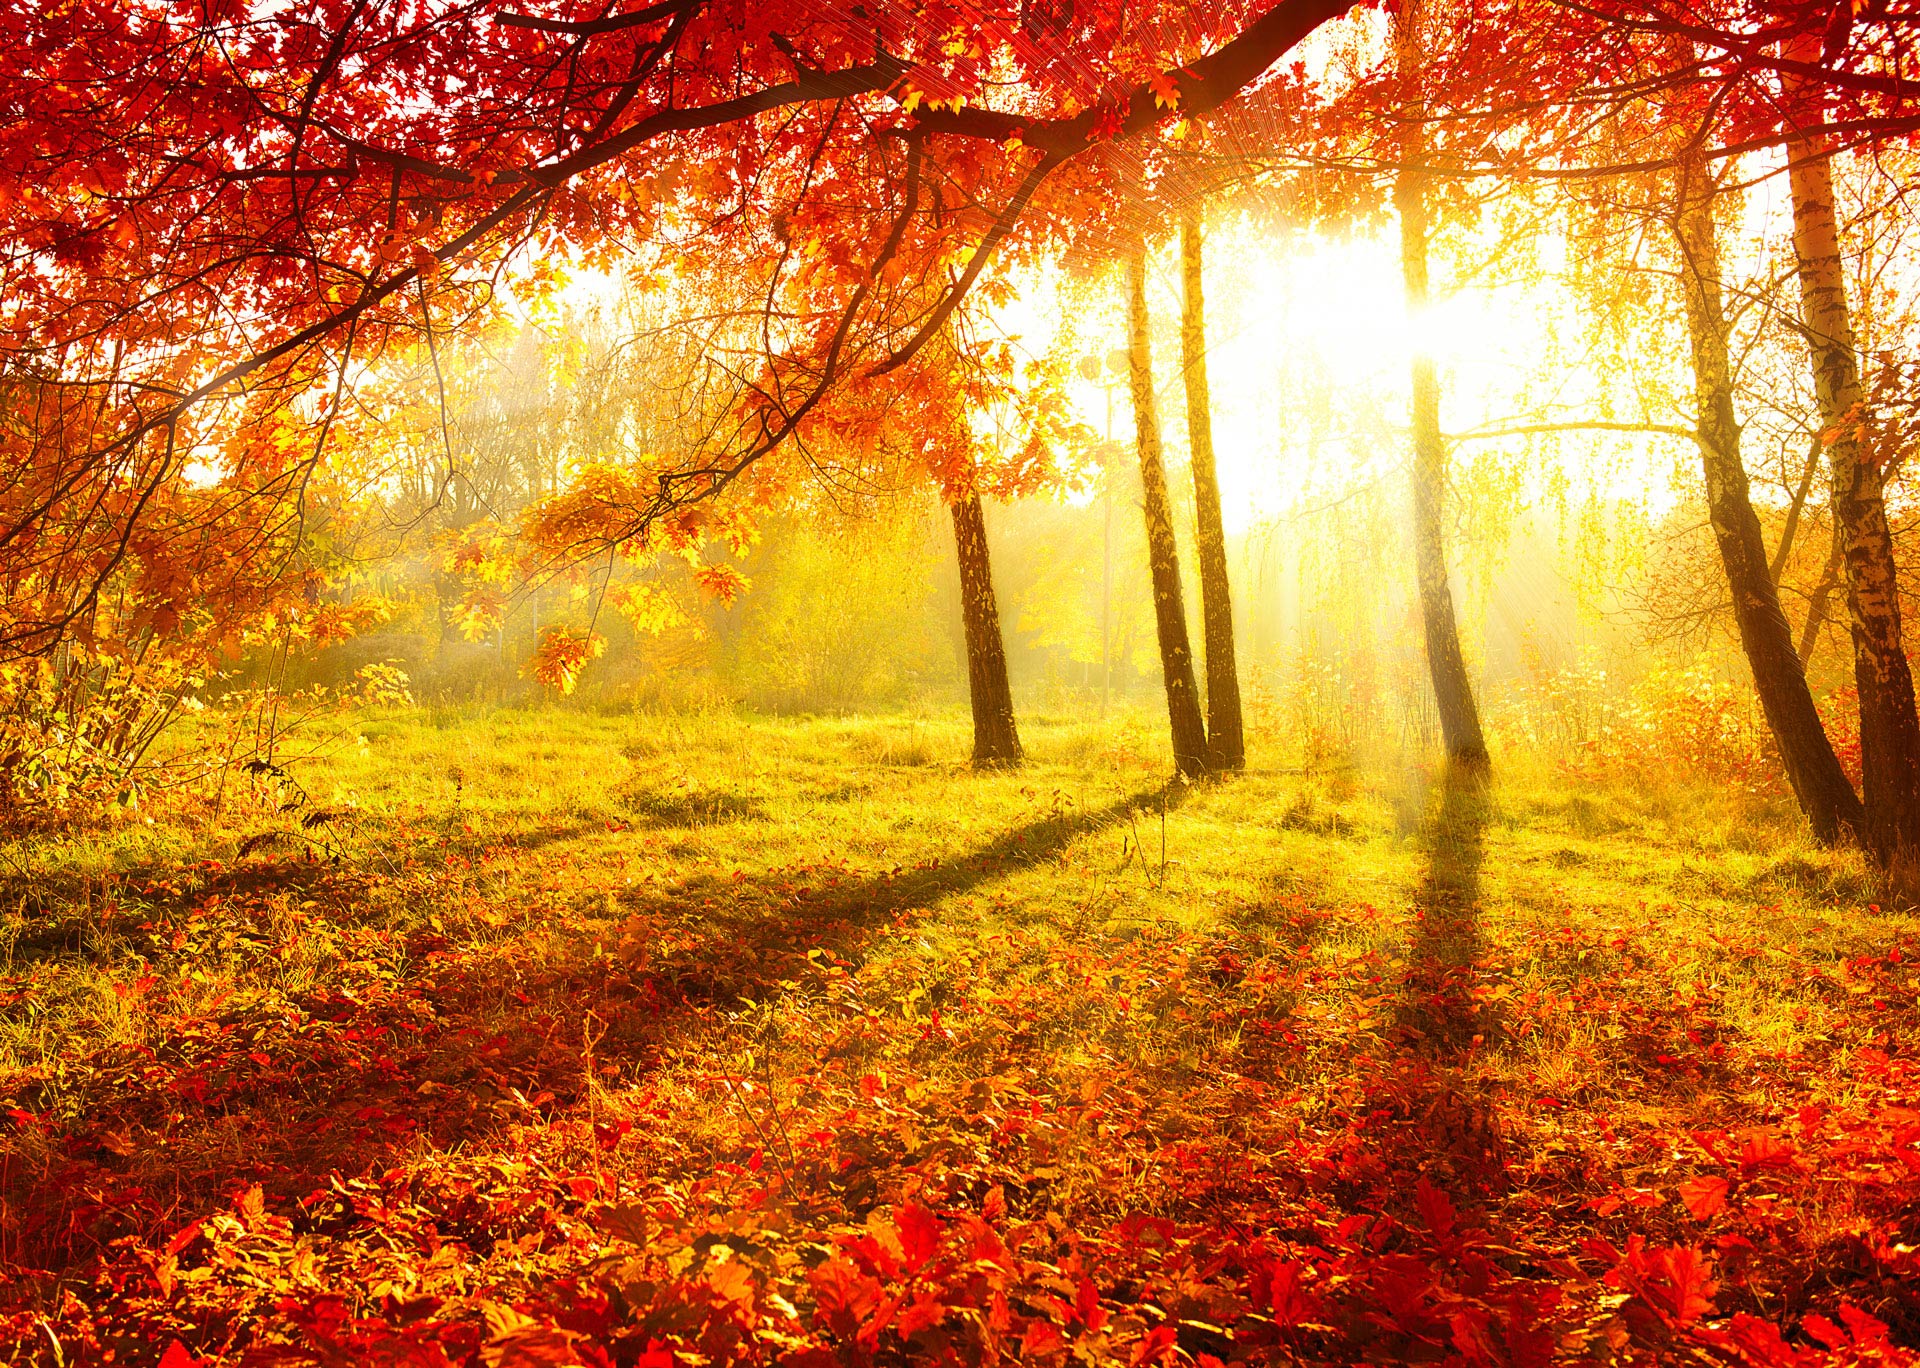 4 tipy pro barevné podzimní fotografování